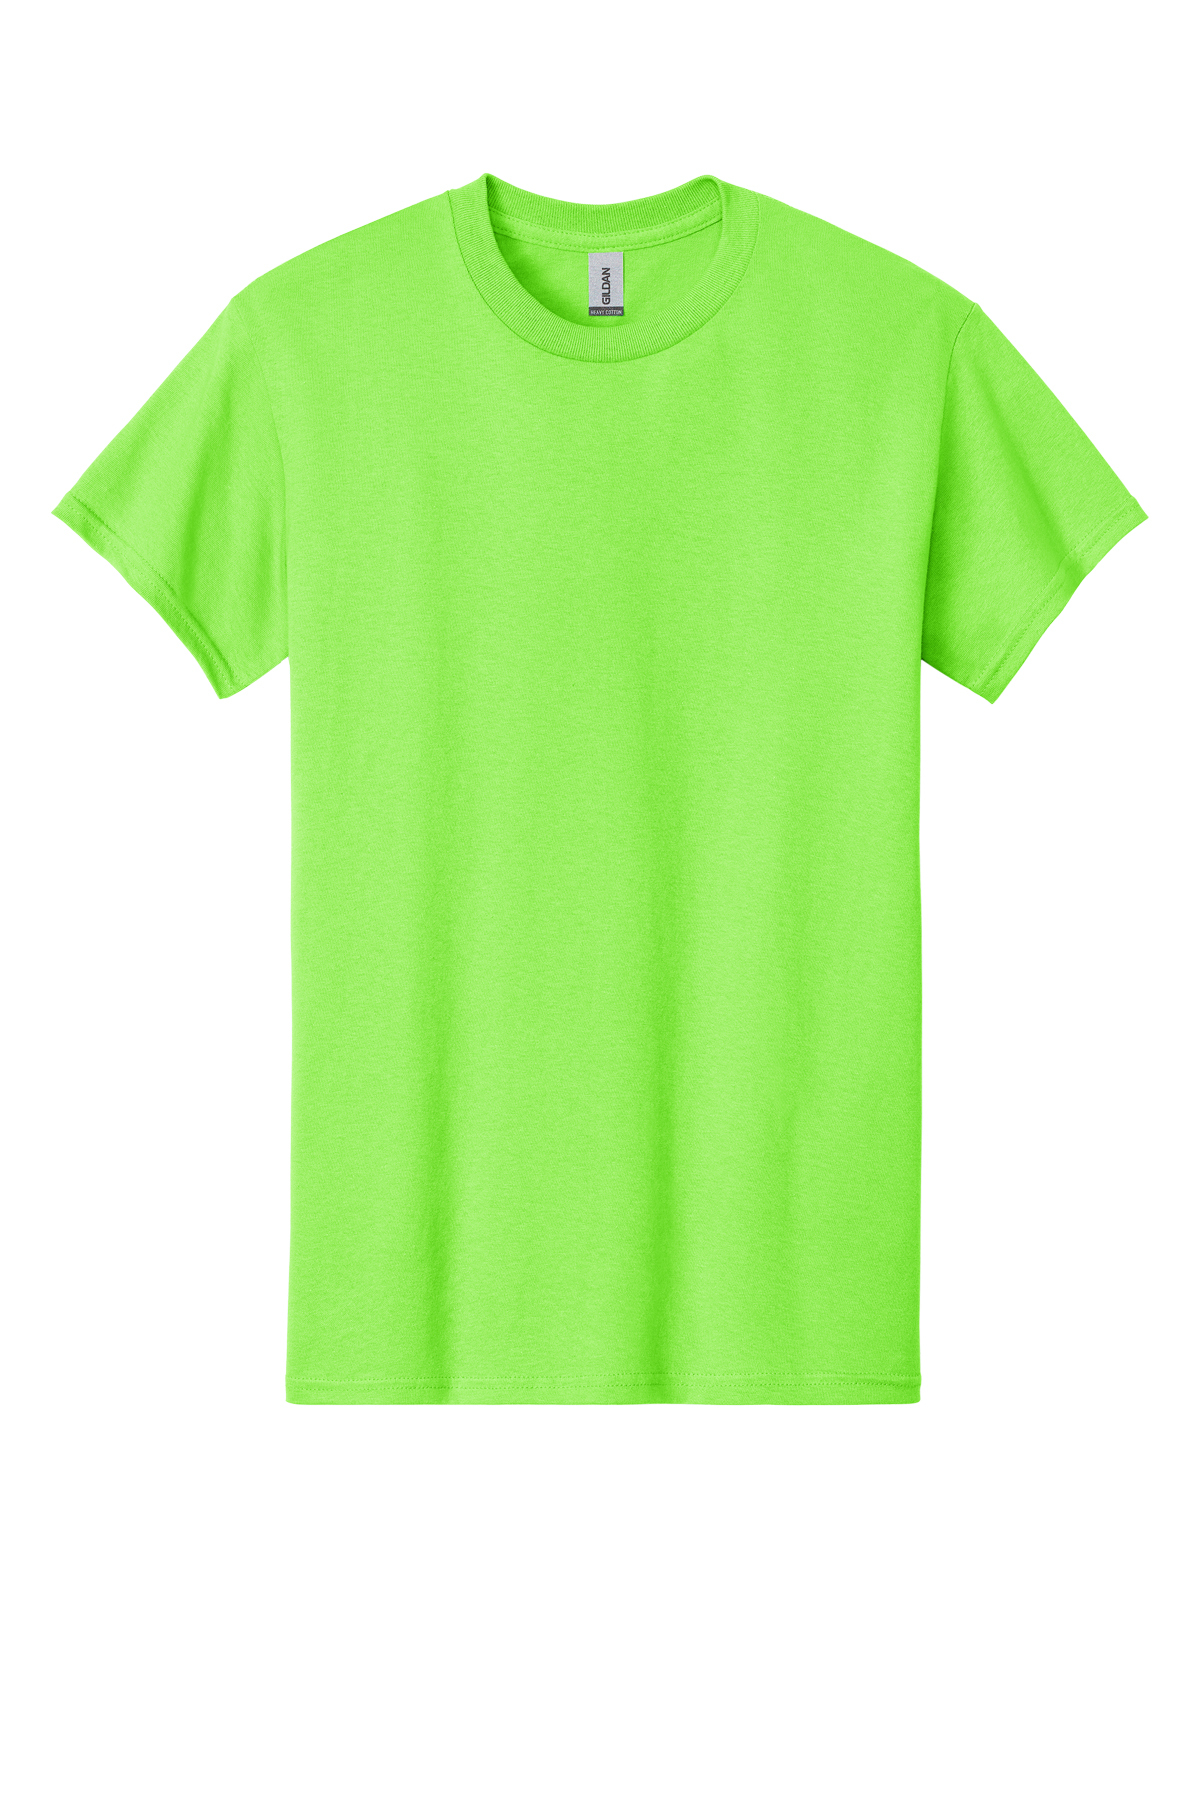 Cotton 100% | - Gildan T-Shirt Product Cotton Heavy SanMar |